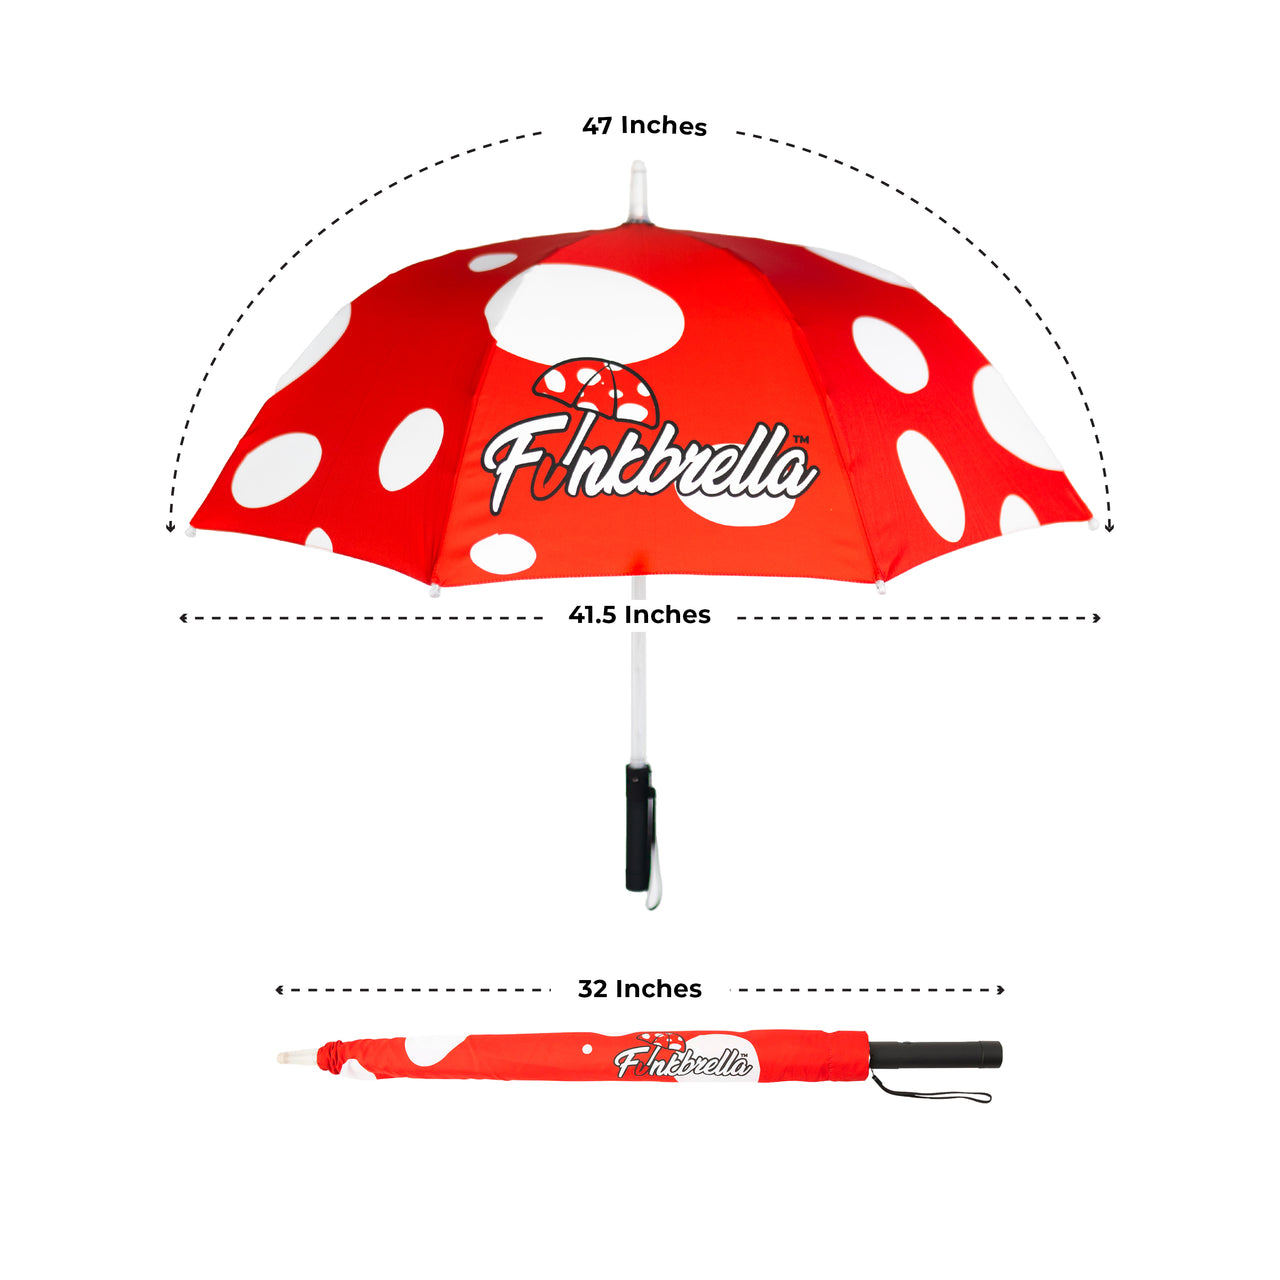 Magic Mushroom LED Umbrella with Multi-Color LED Light Show, Strobe, Fade, Static LED Settings, AAA Batteries, 47” Canopy